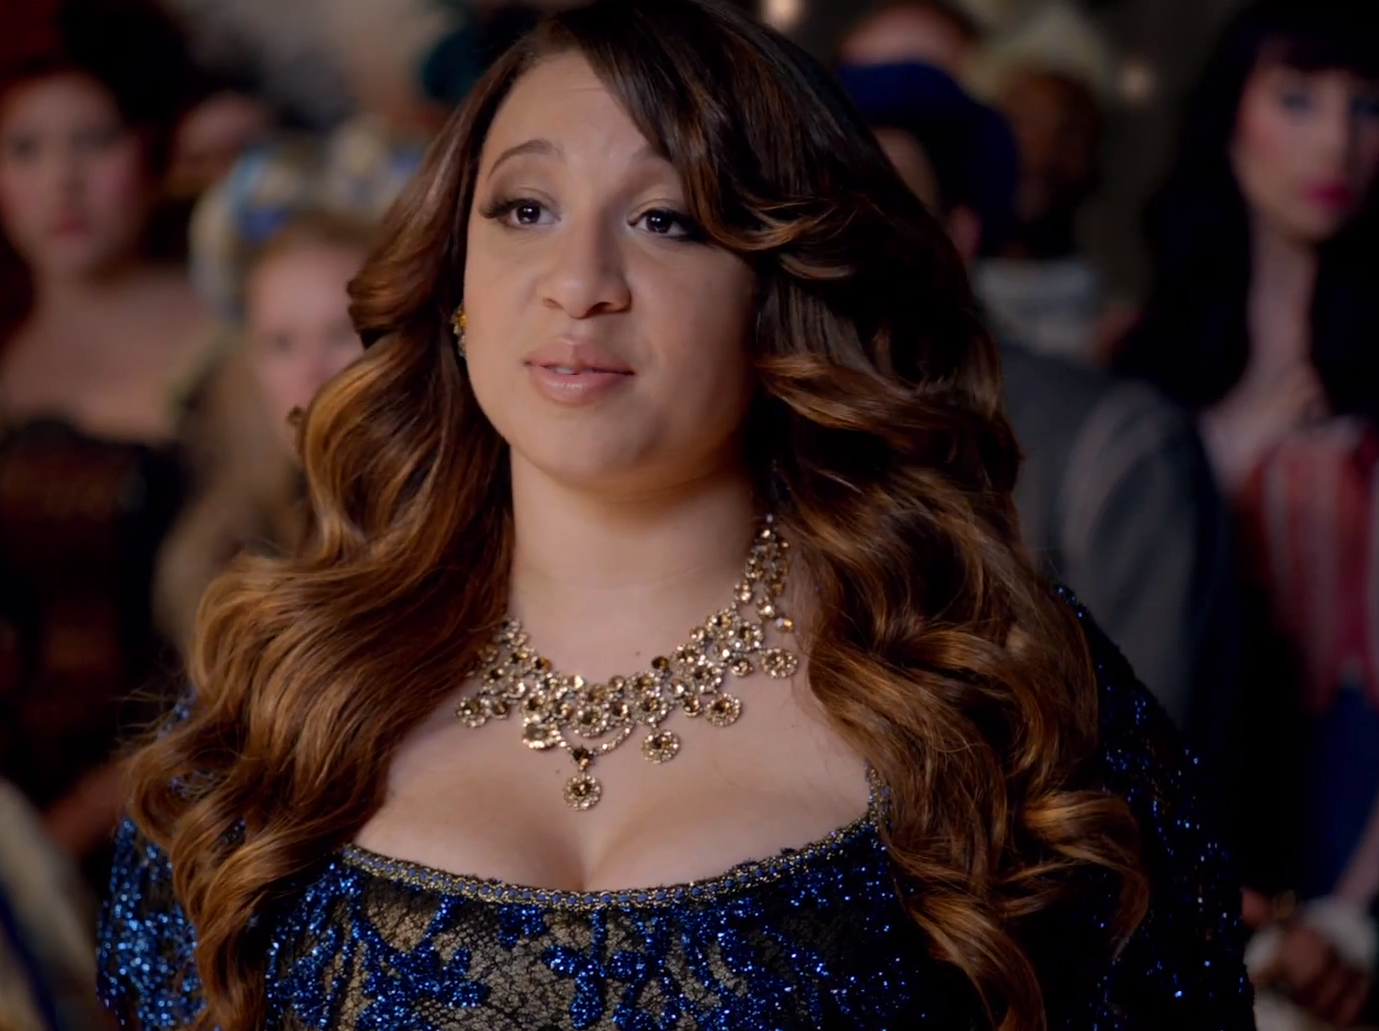 Watch 'X-Factor' Winner Melanie Amaro's Super Bowl Ad